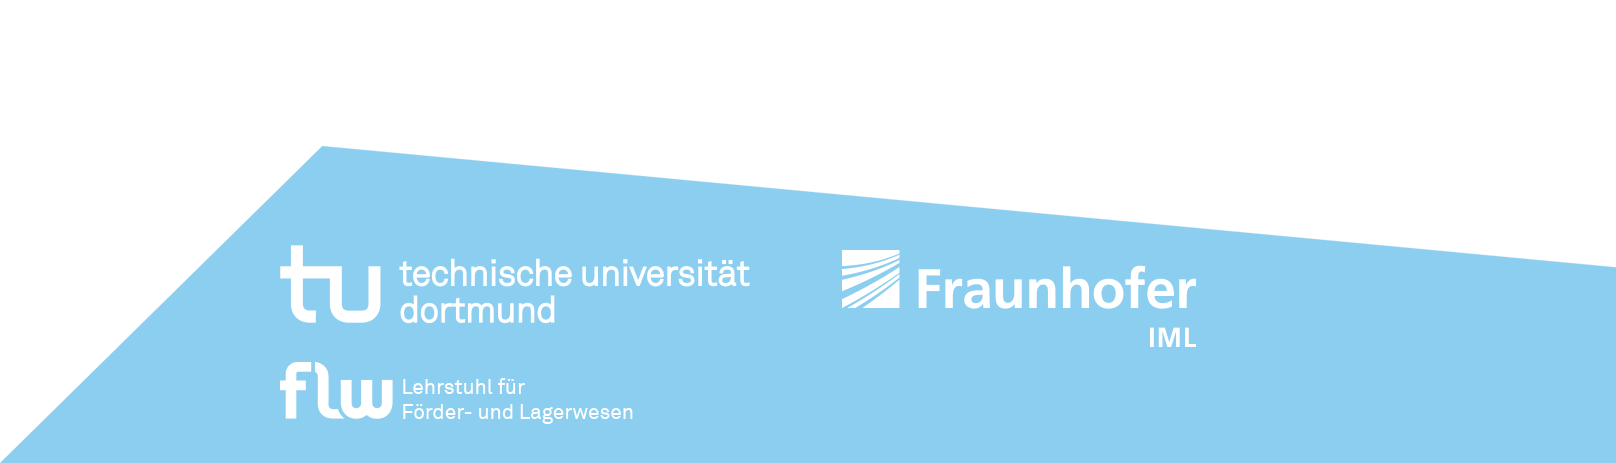 Veranstalterlogos TU Dortmund, Lehrstuhl FLW und Fraunhofer IML